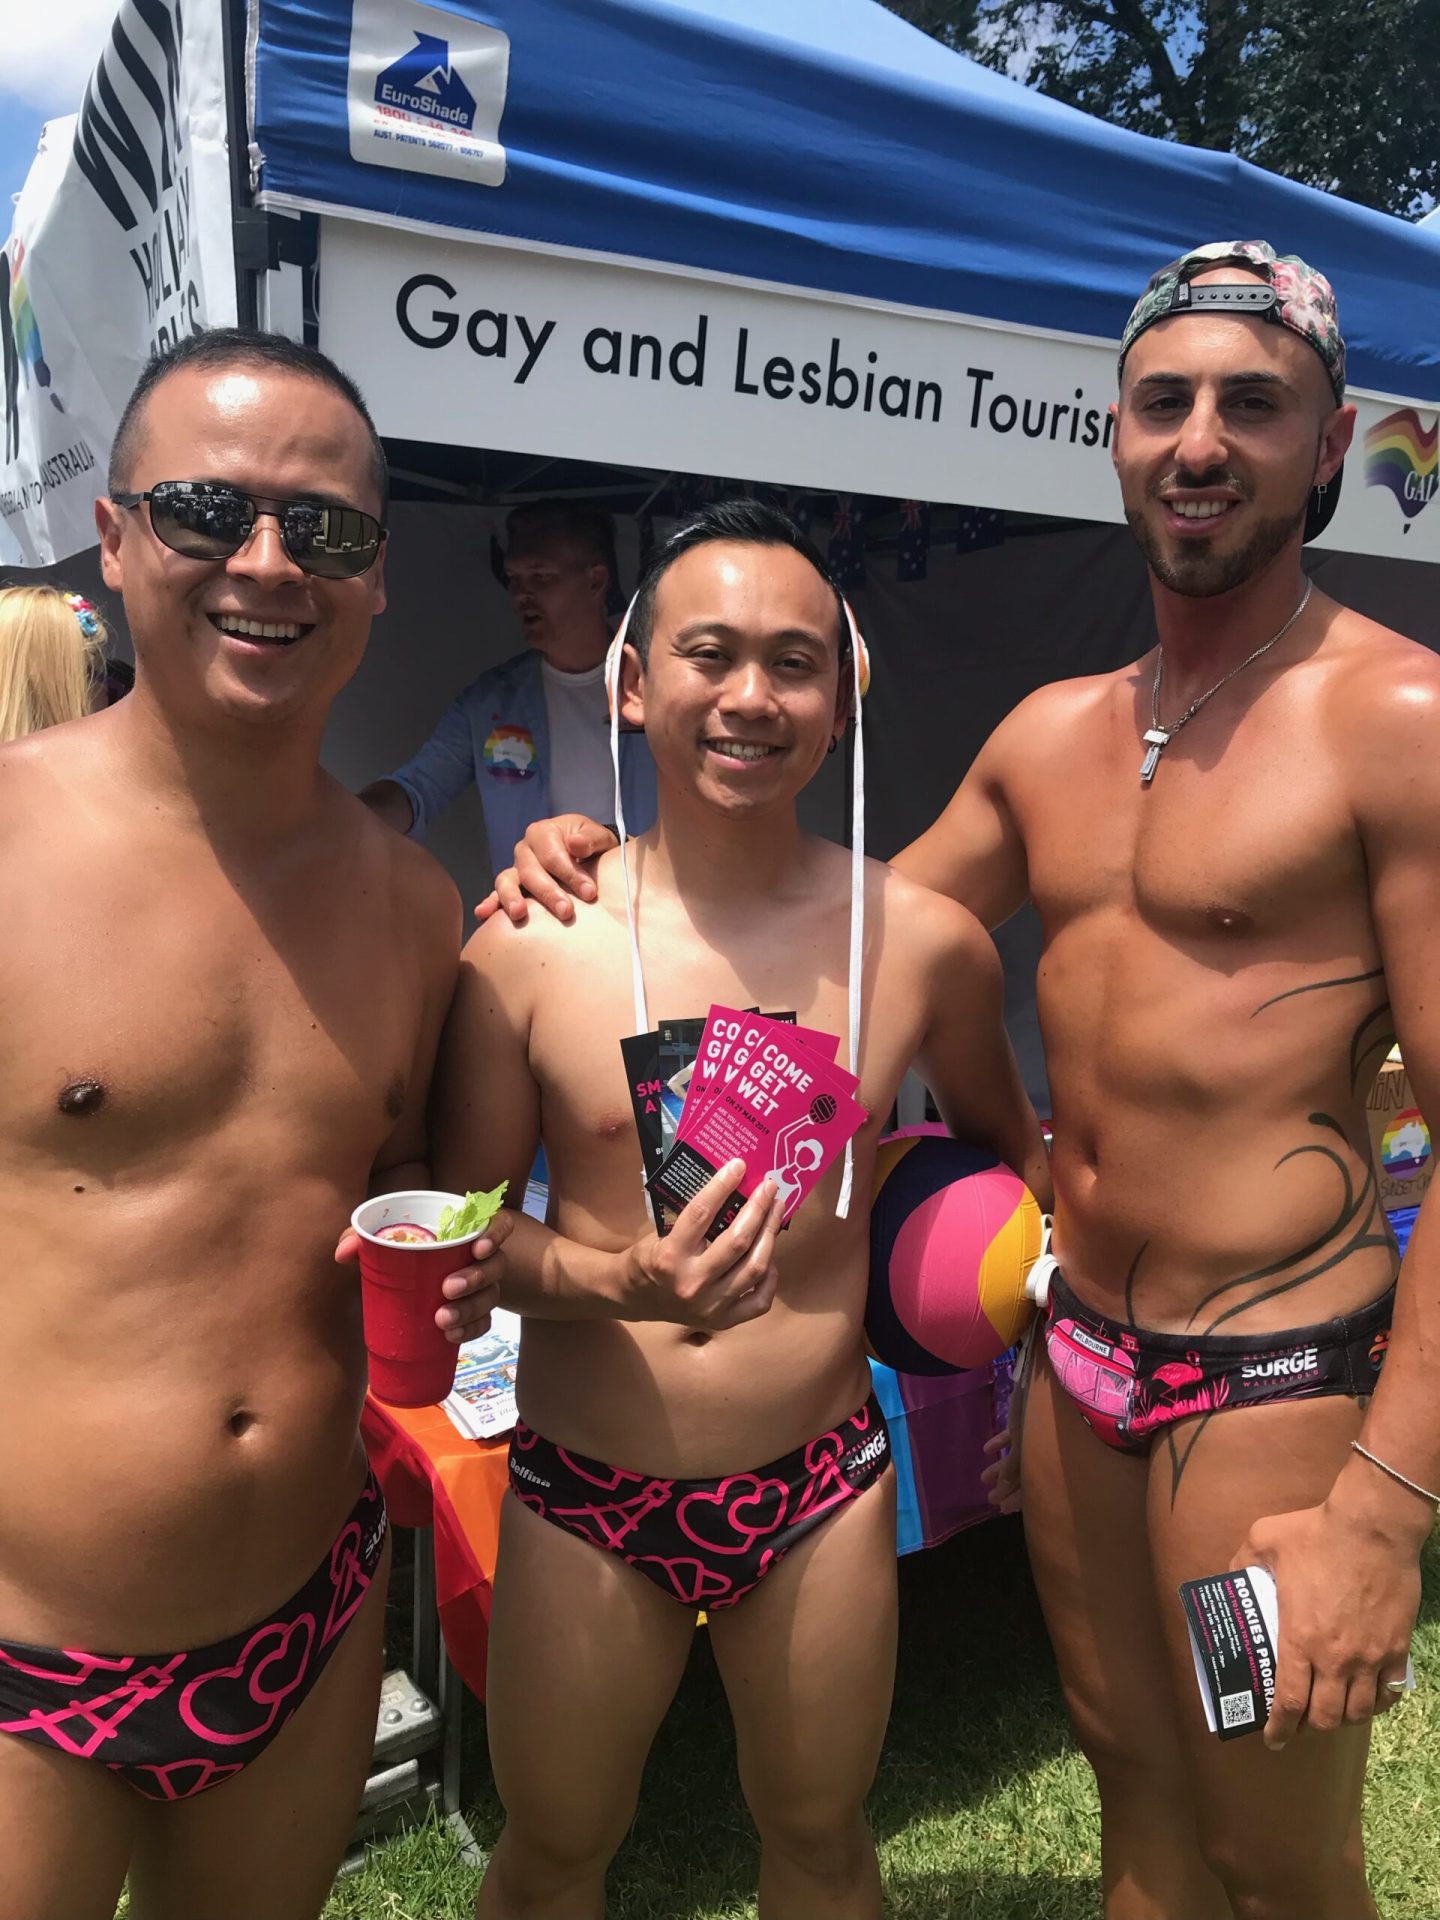 Un avenir prometteur pour la communauté LGBT australienne !